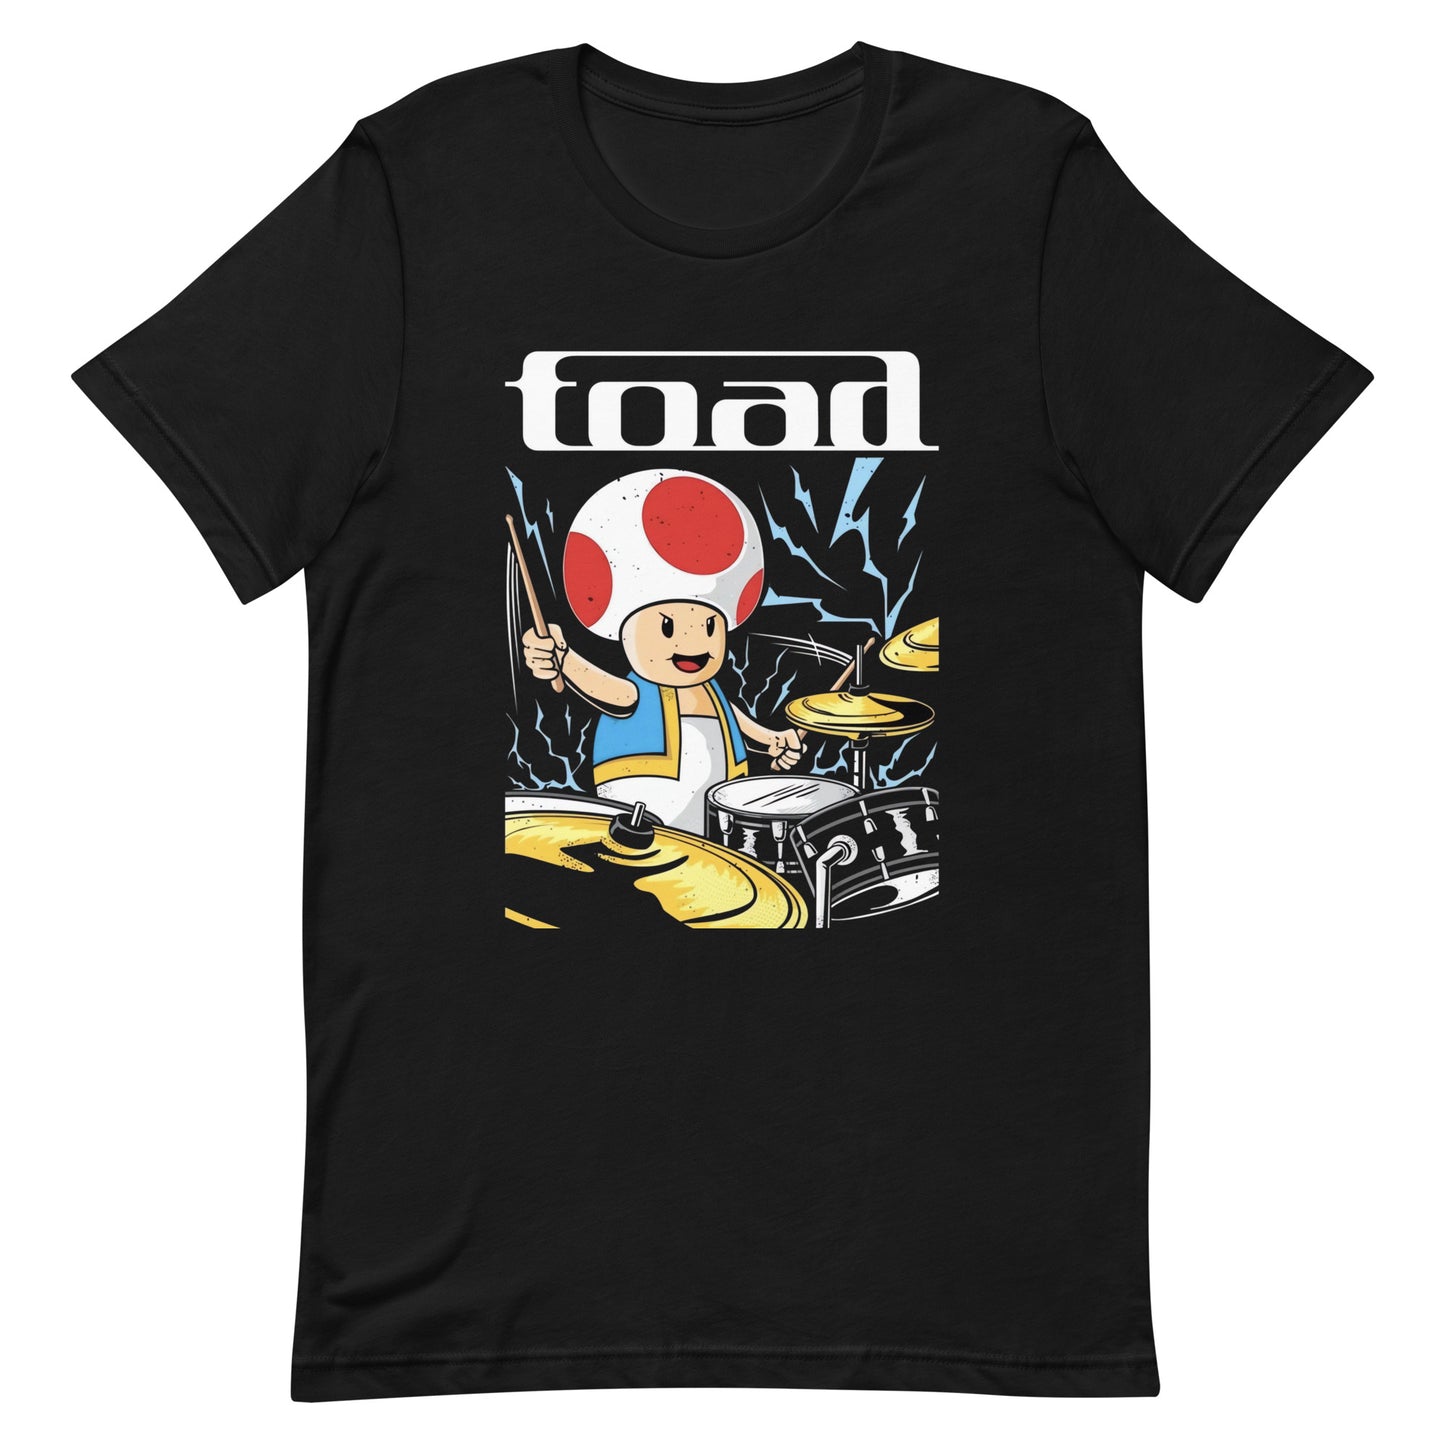 Playera de Toad, Es un producto de ropa que es ideal para los fanáticos de Mario Bross y Tool muestra tu amor de manera divertida y original.